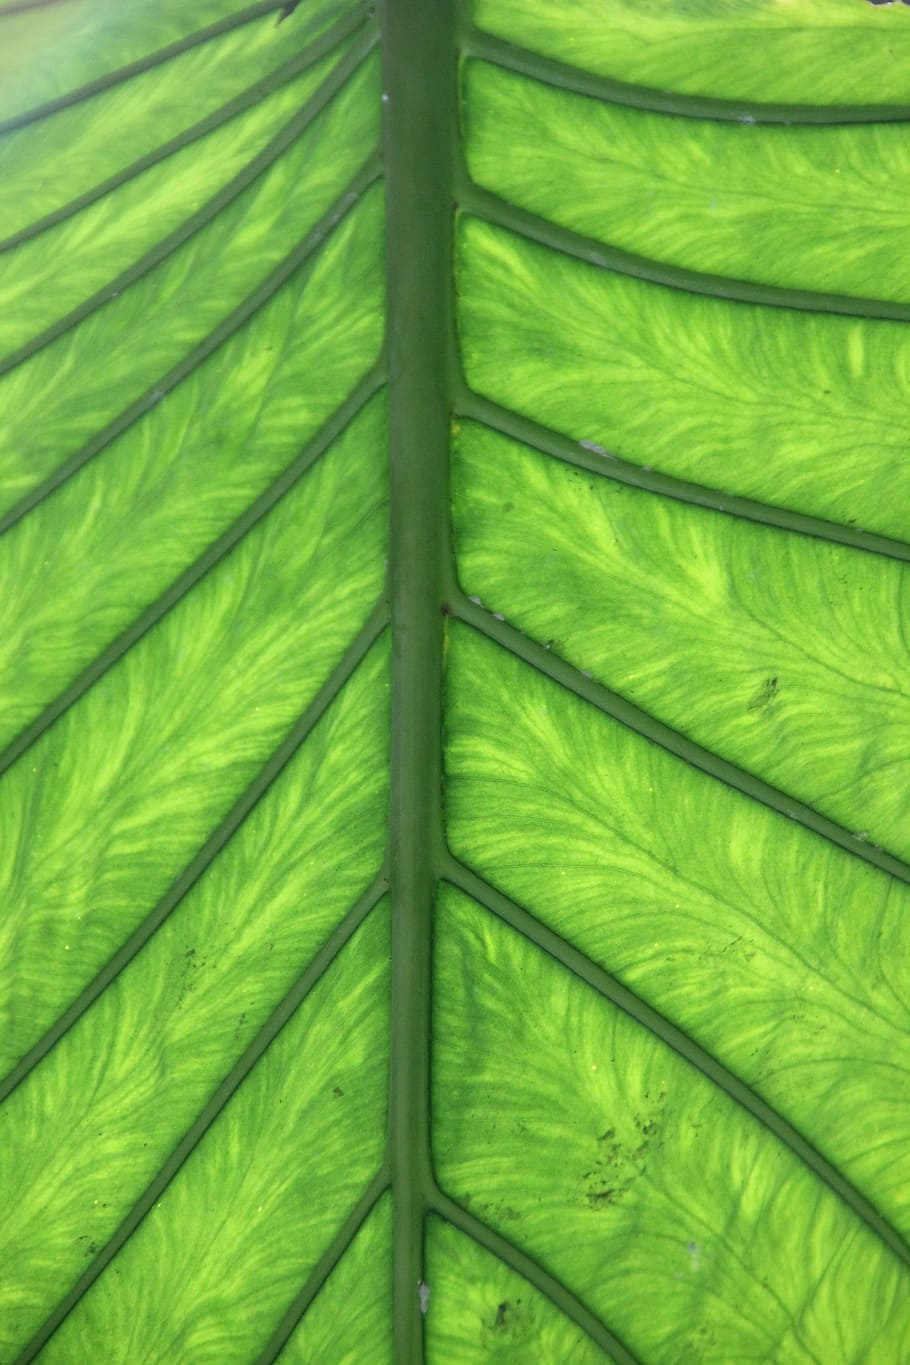 Hijau, Daun, Vena, Tanaman, Kelapa Sawit, urat daun, klorofil, dapat merujuk pada, warna hijau, pertumbuhan